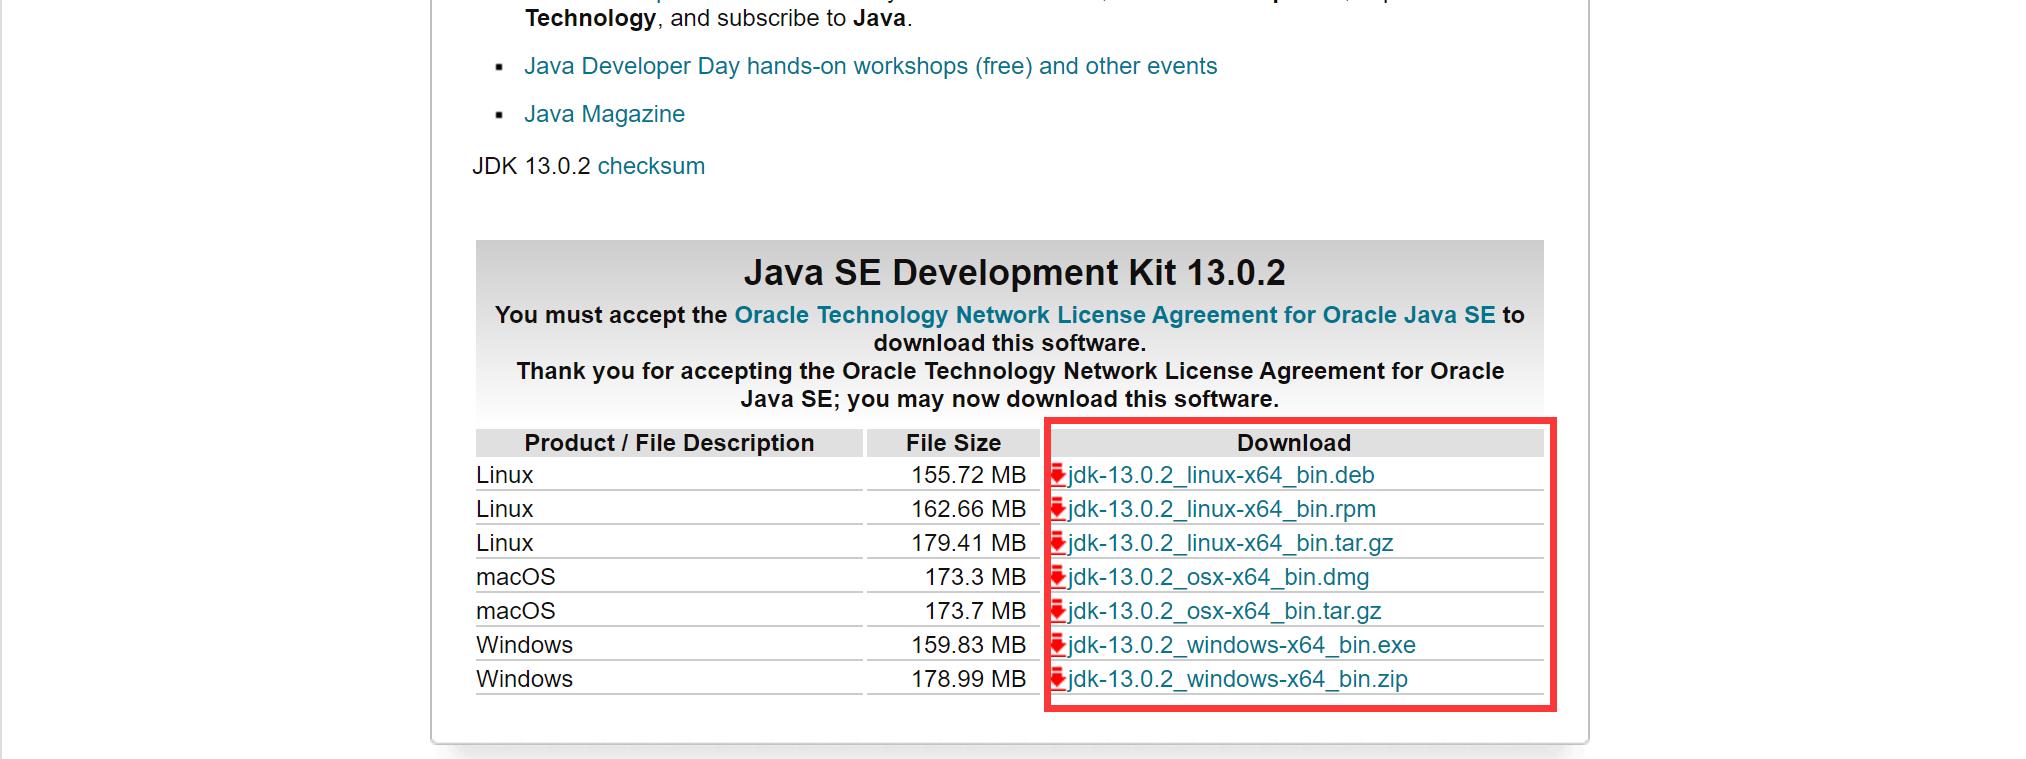 Java JDK11安装过程、环境变量配置及注意事项 - 文章图片